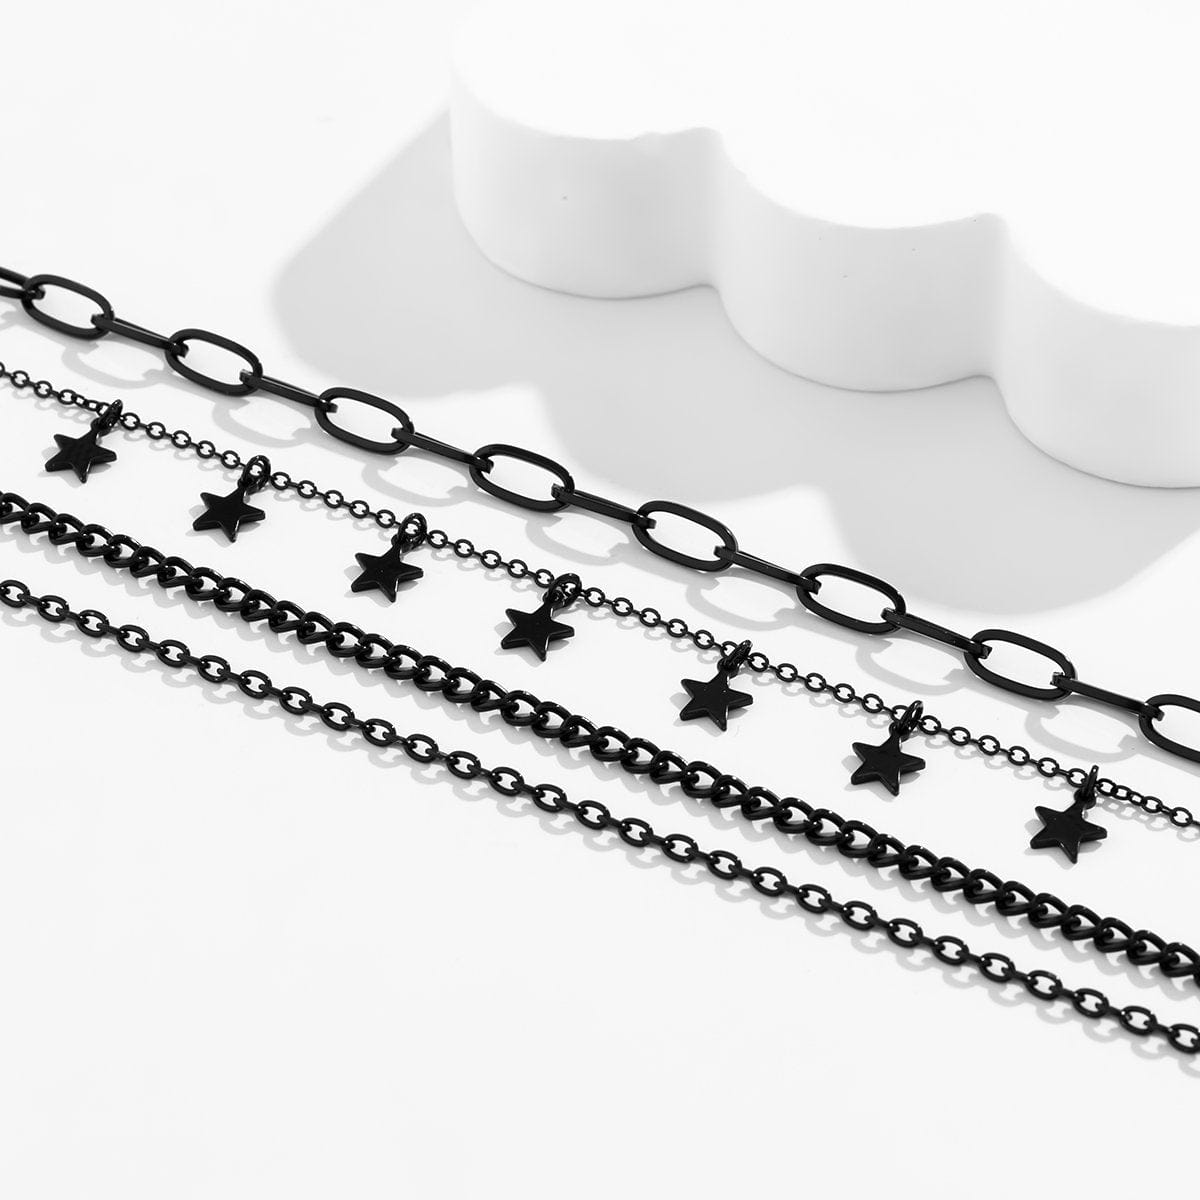 Chic Layered Star Tassel Chain Necklace Set - ArtGalleryZen